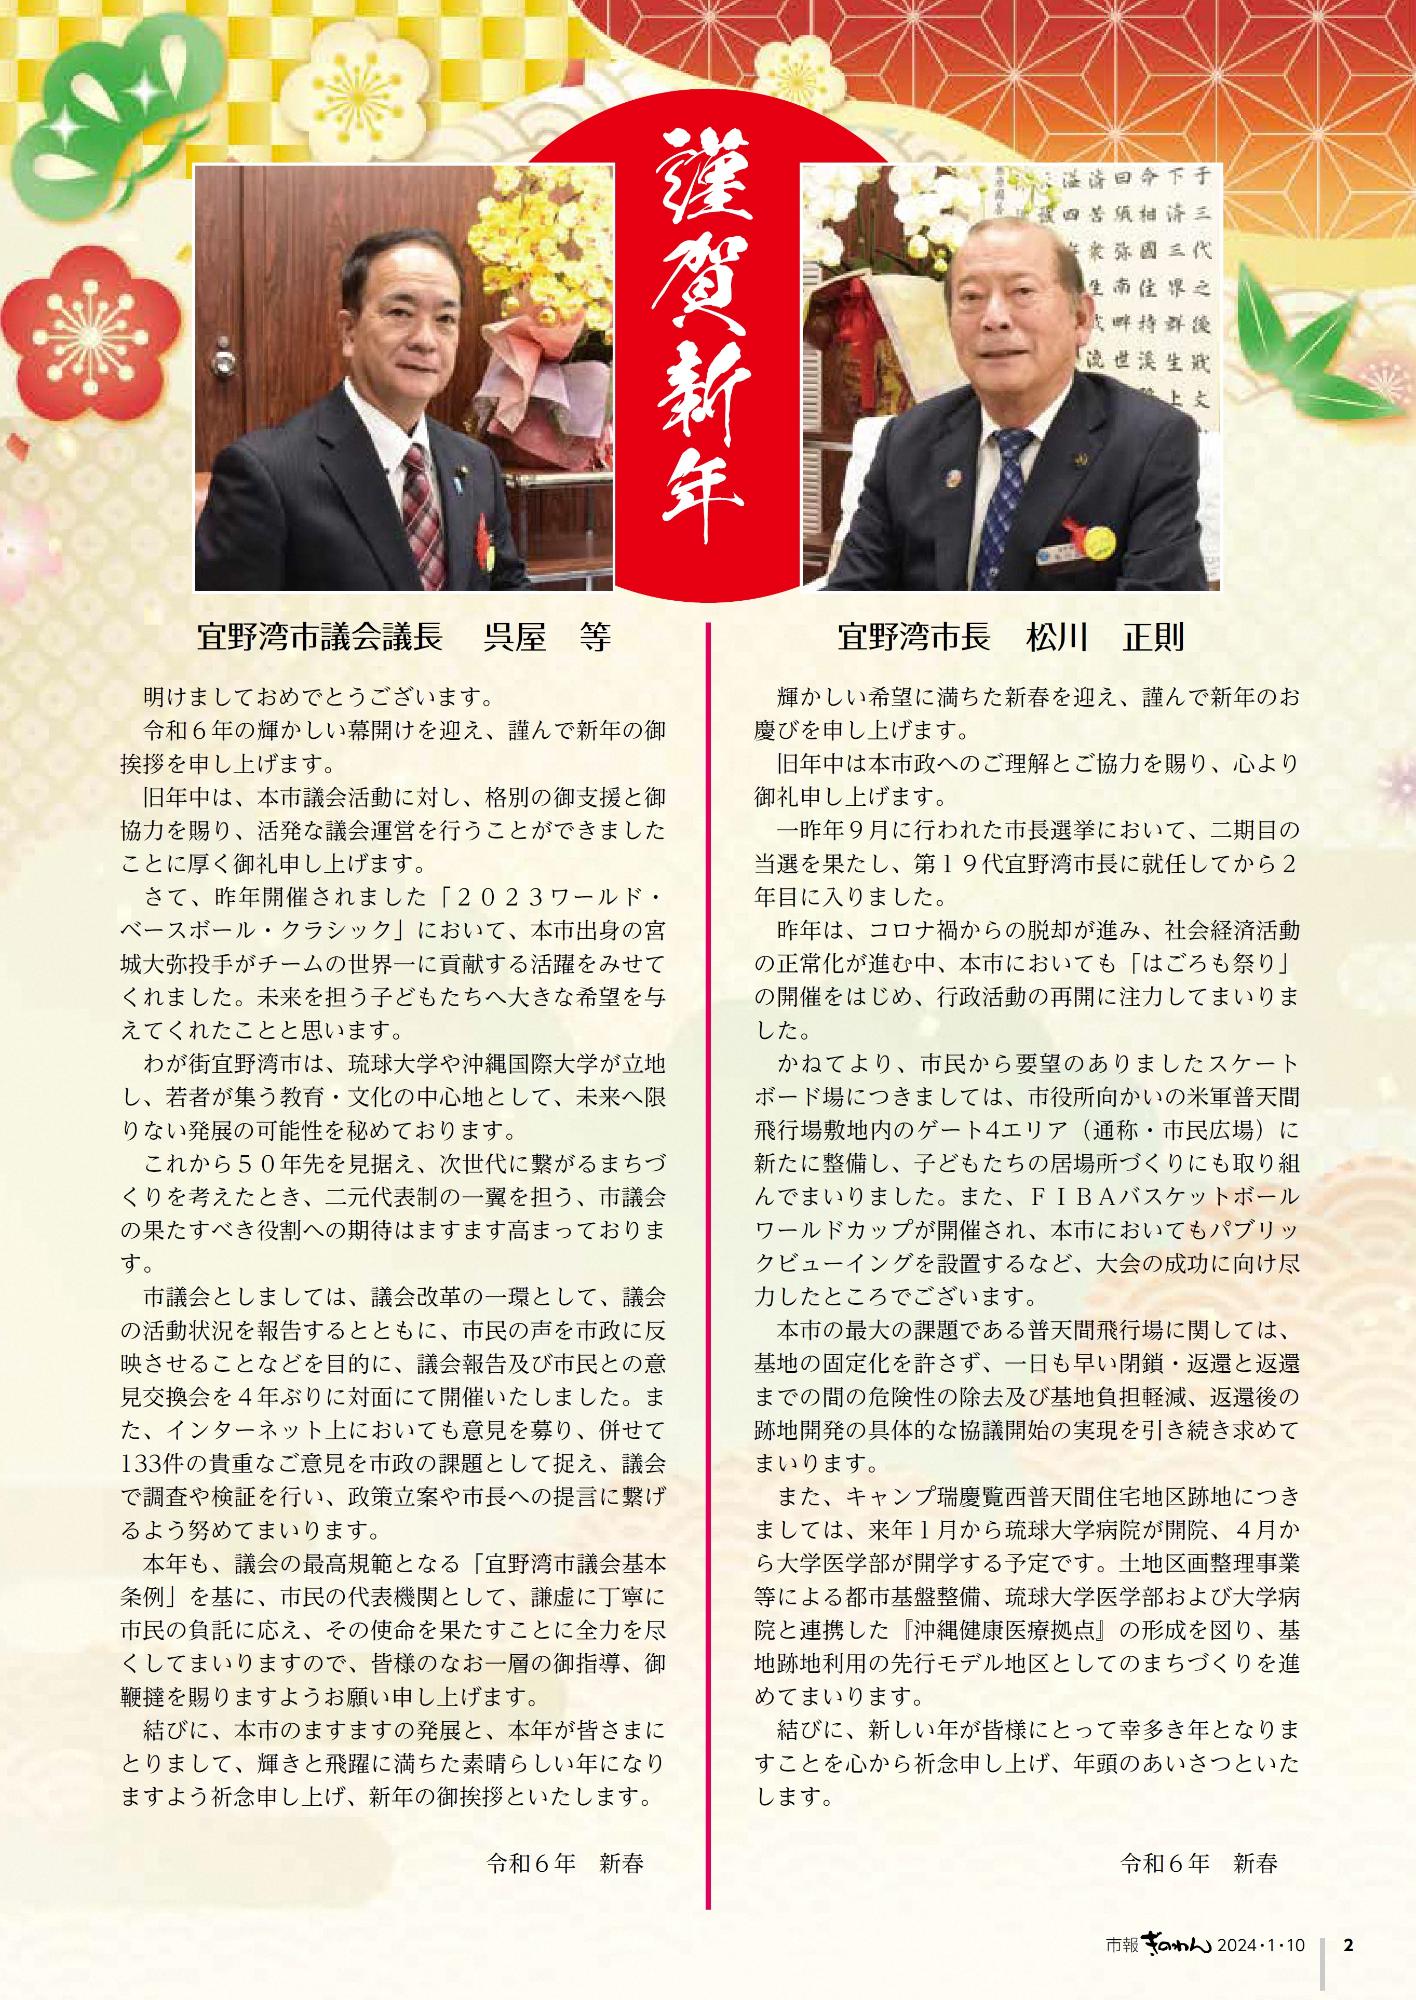 2ページ目　松川市長、呉屋議長の新年のあいさつ